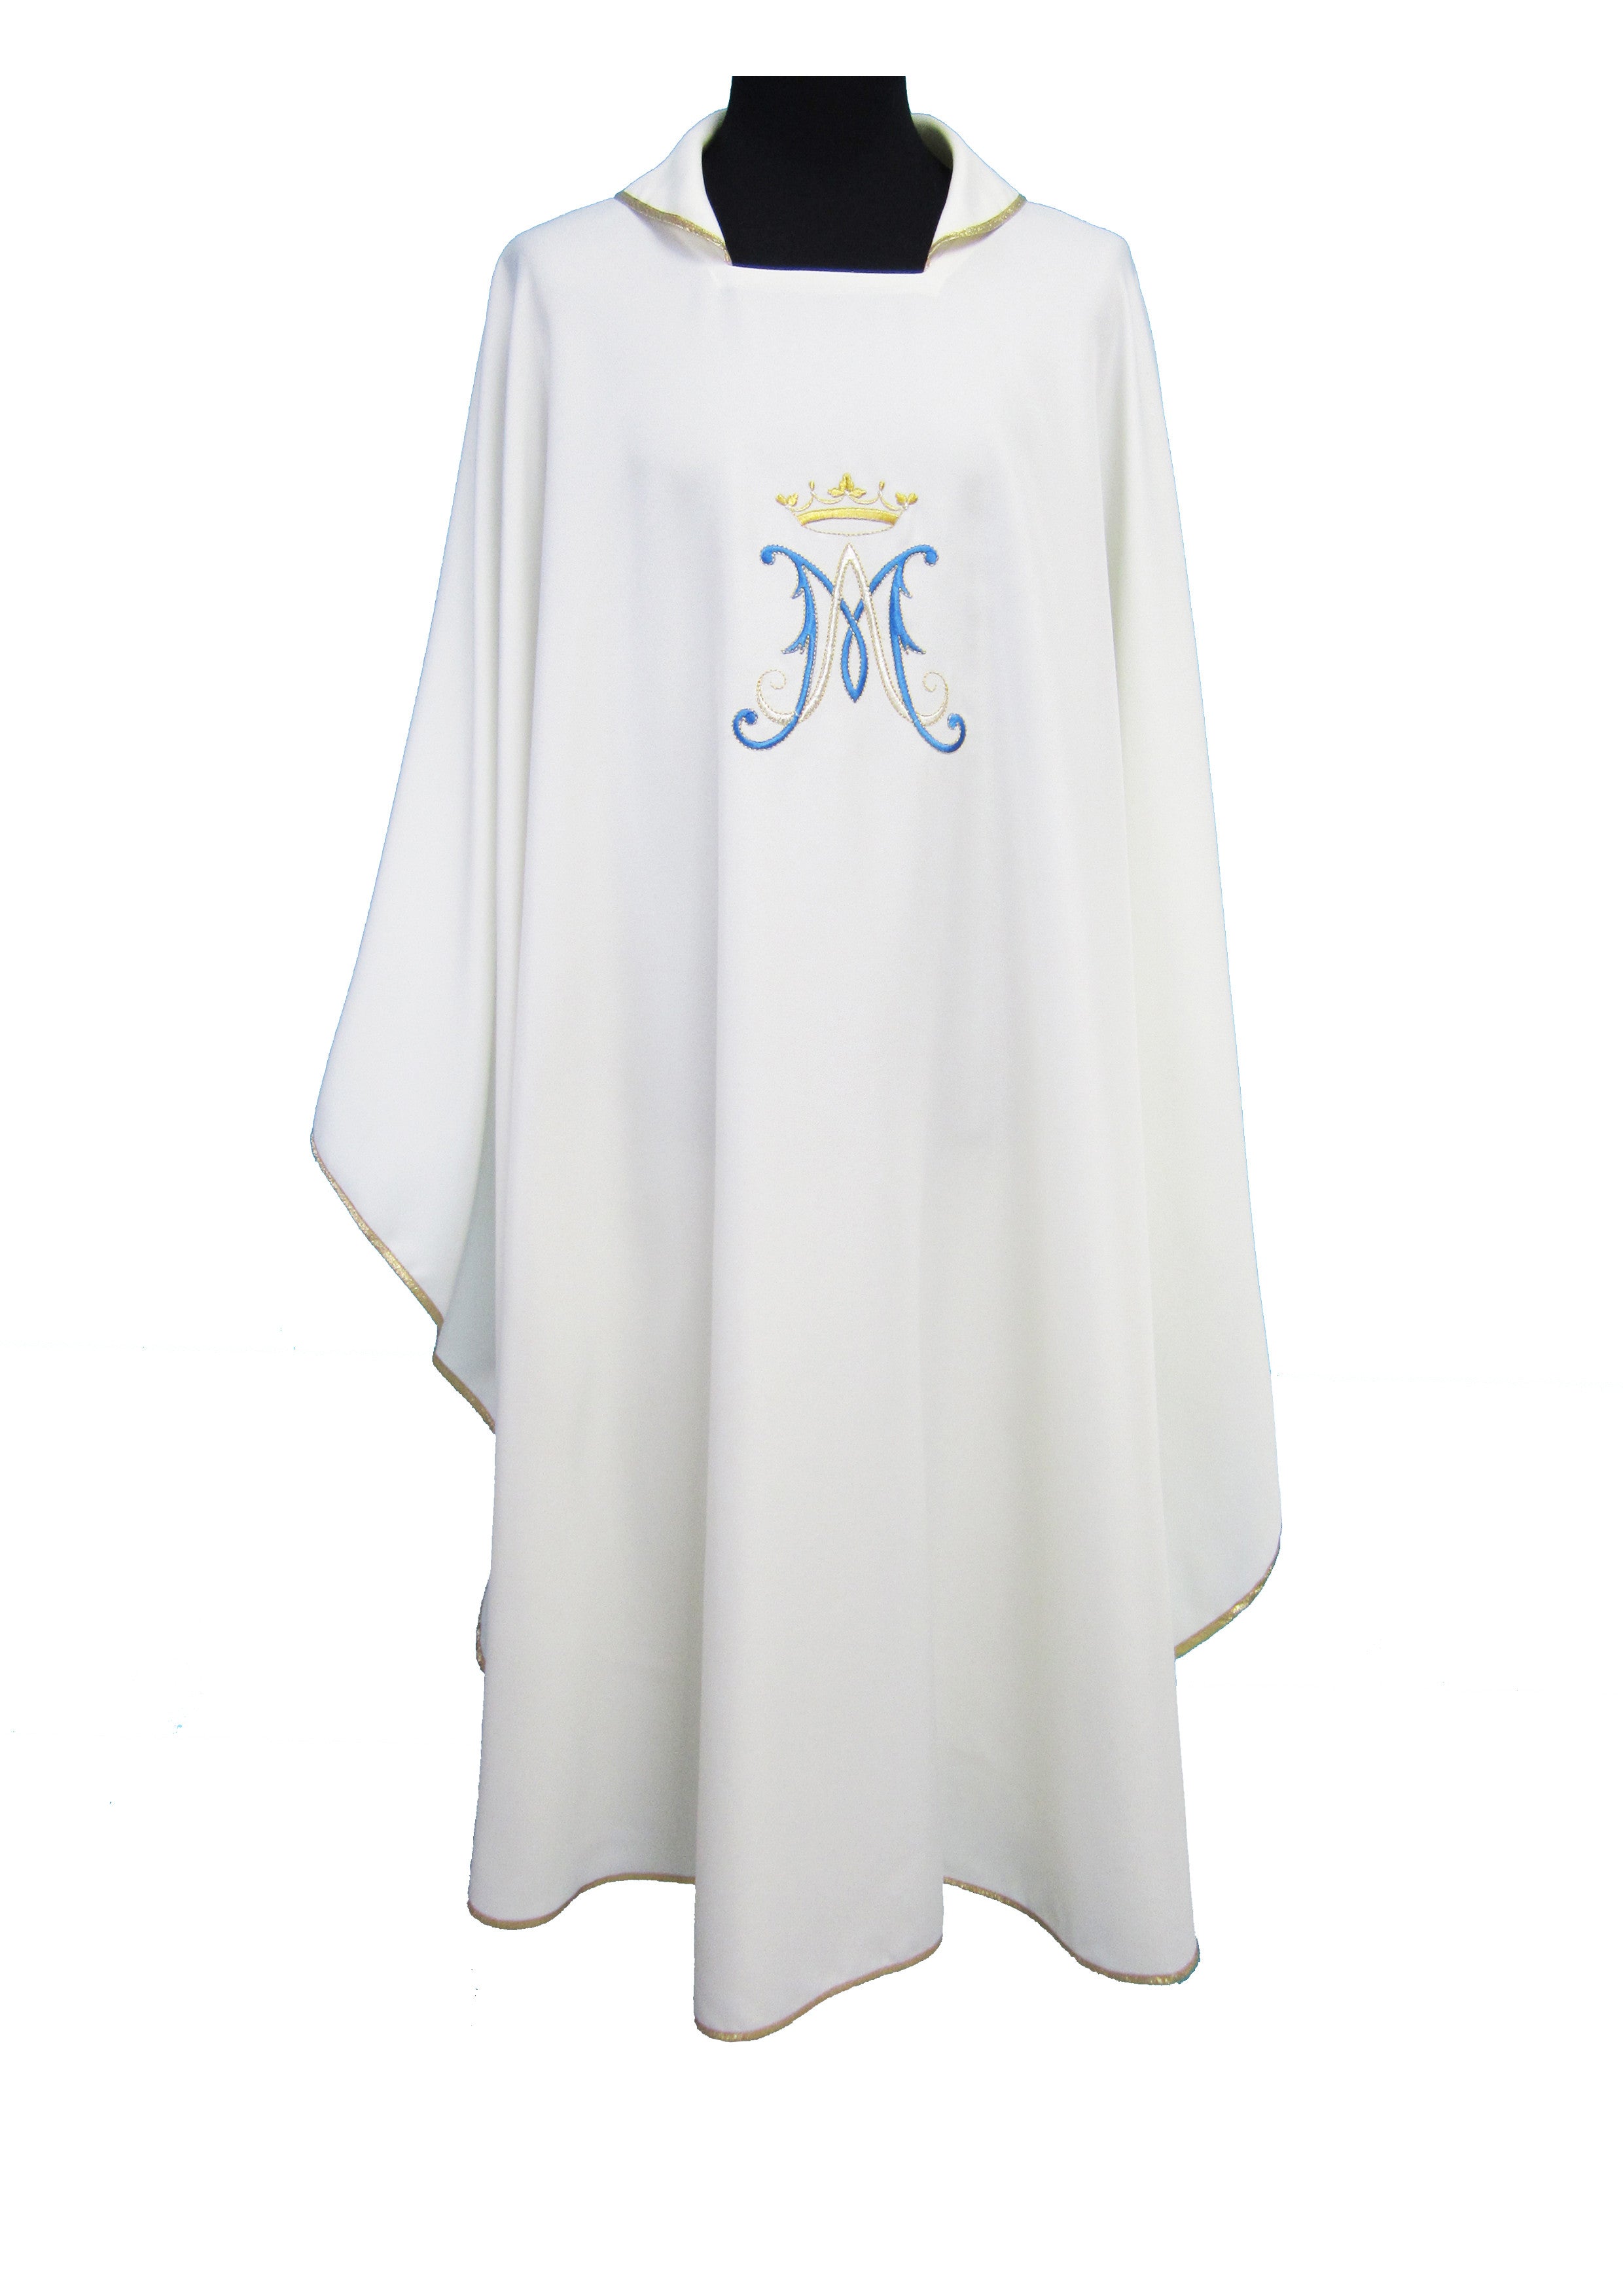 Casula Liturgica mariana Bianca Monogramma azzurro e Oro